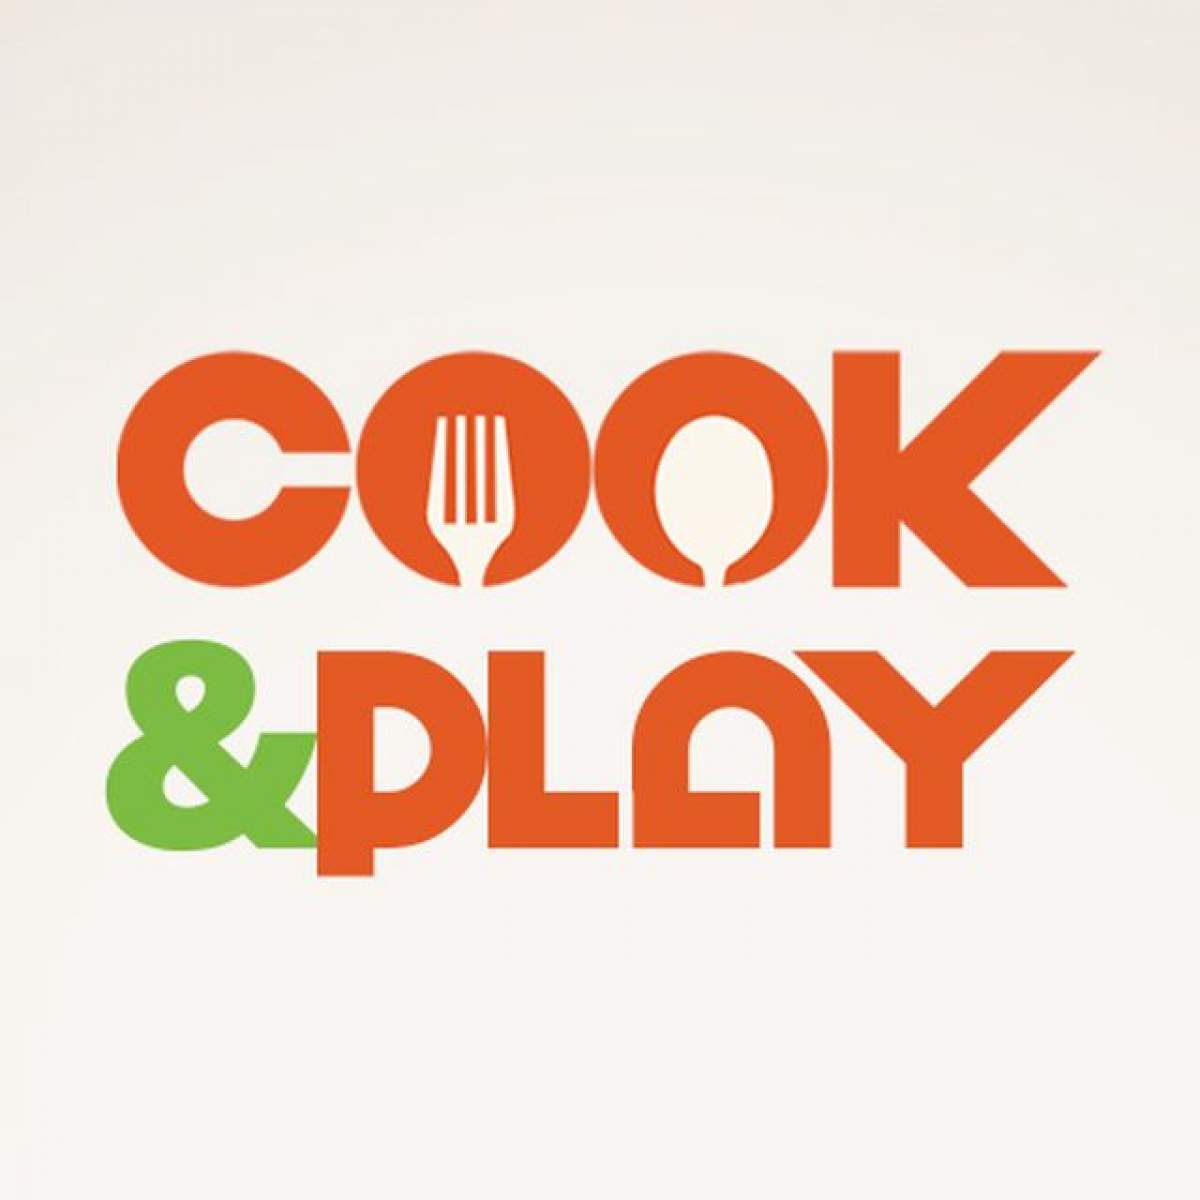 S-a lansat ”Cook&Play”, cel mai savuros canal AntenaPlay! Urmărește cele mai savuroase show-uri culinare 24 / 24 de ore